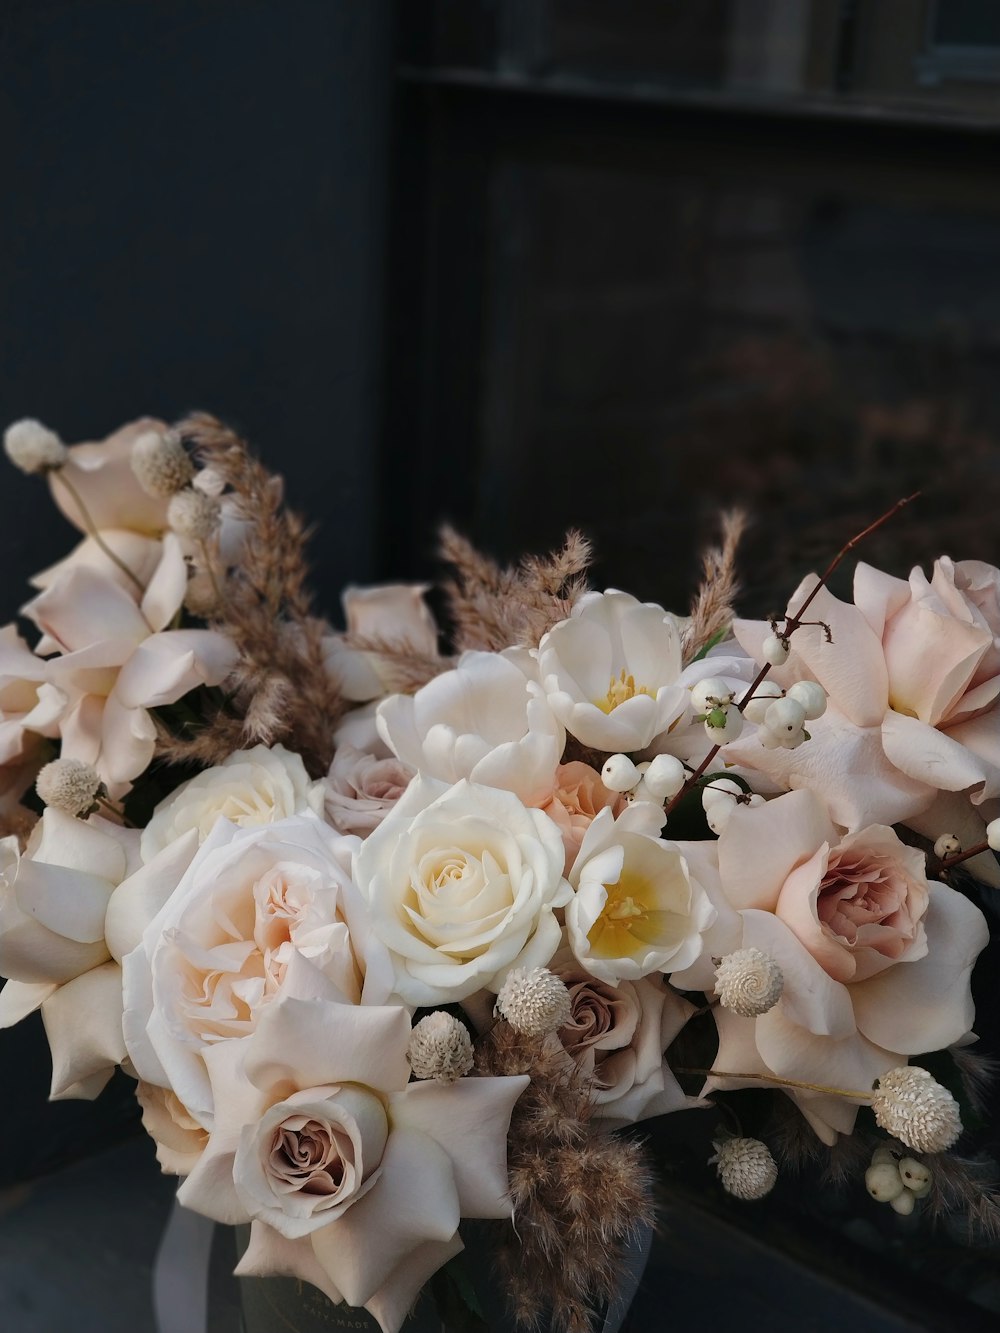 Fotografía de primer plano del ramo de flores rosas y blancas